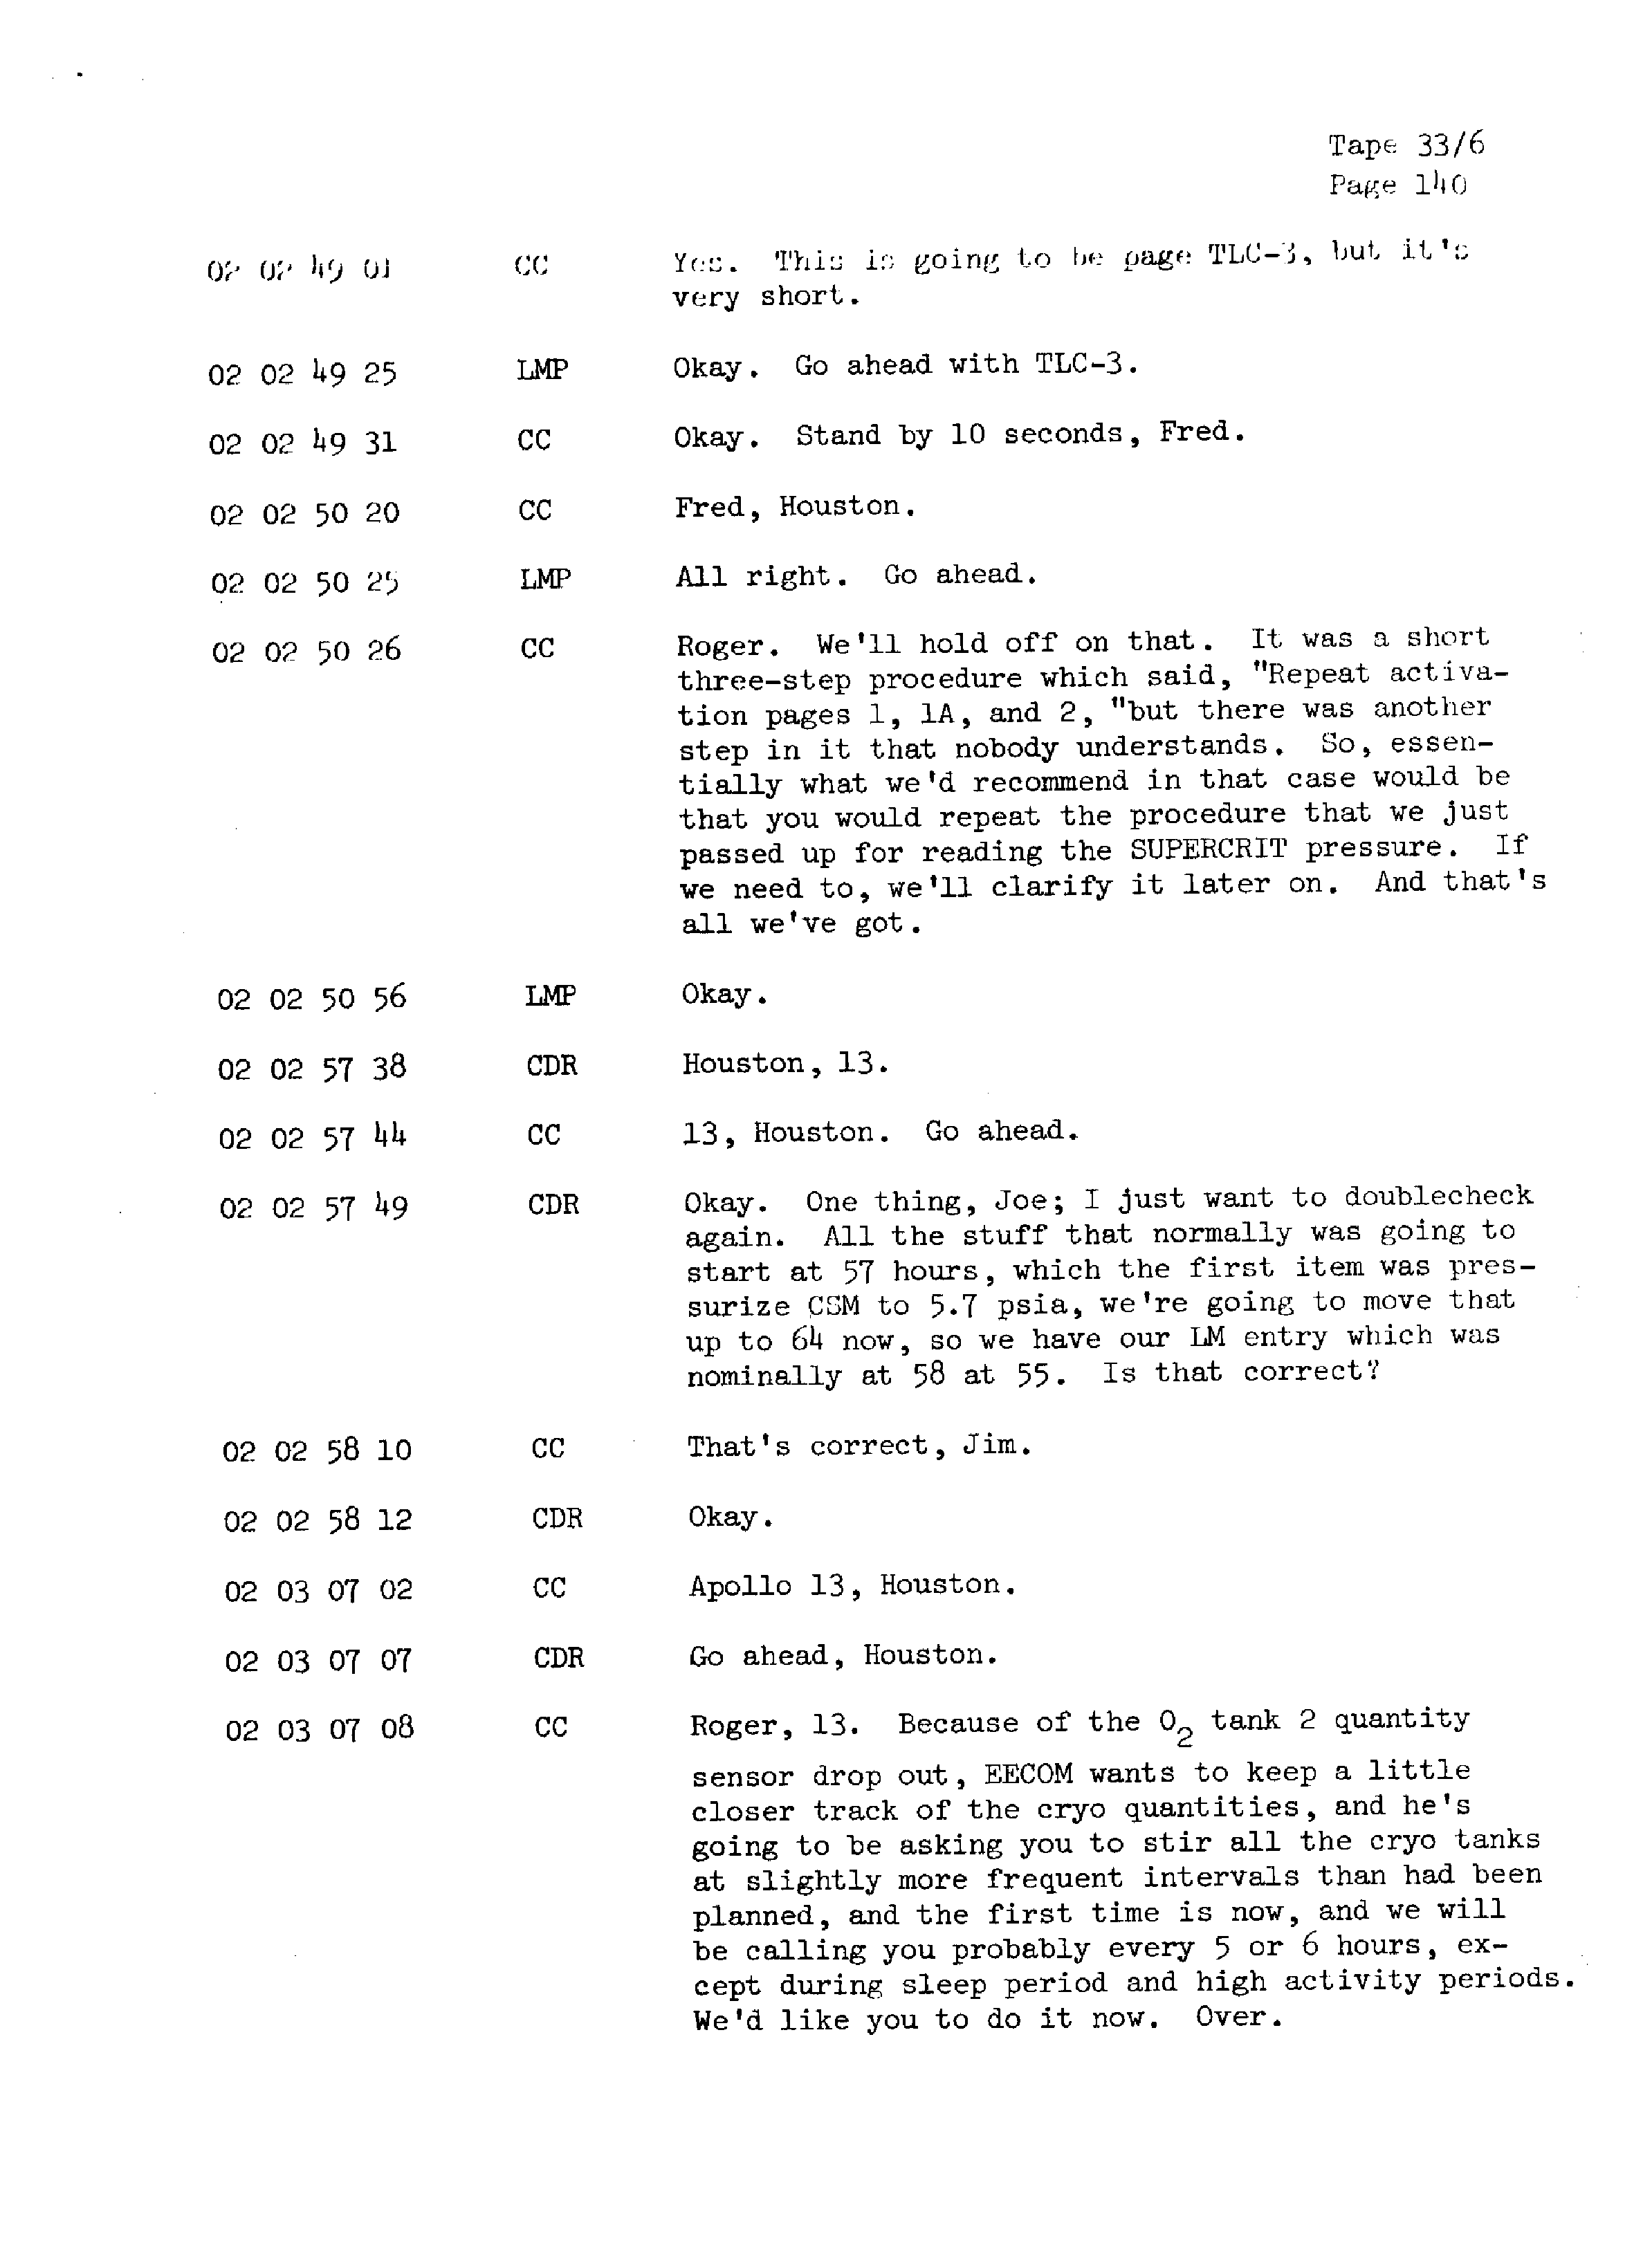 Page 147 of Apollo 13’s original transcript